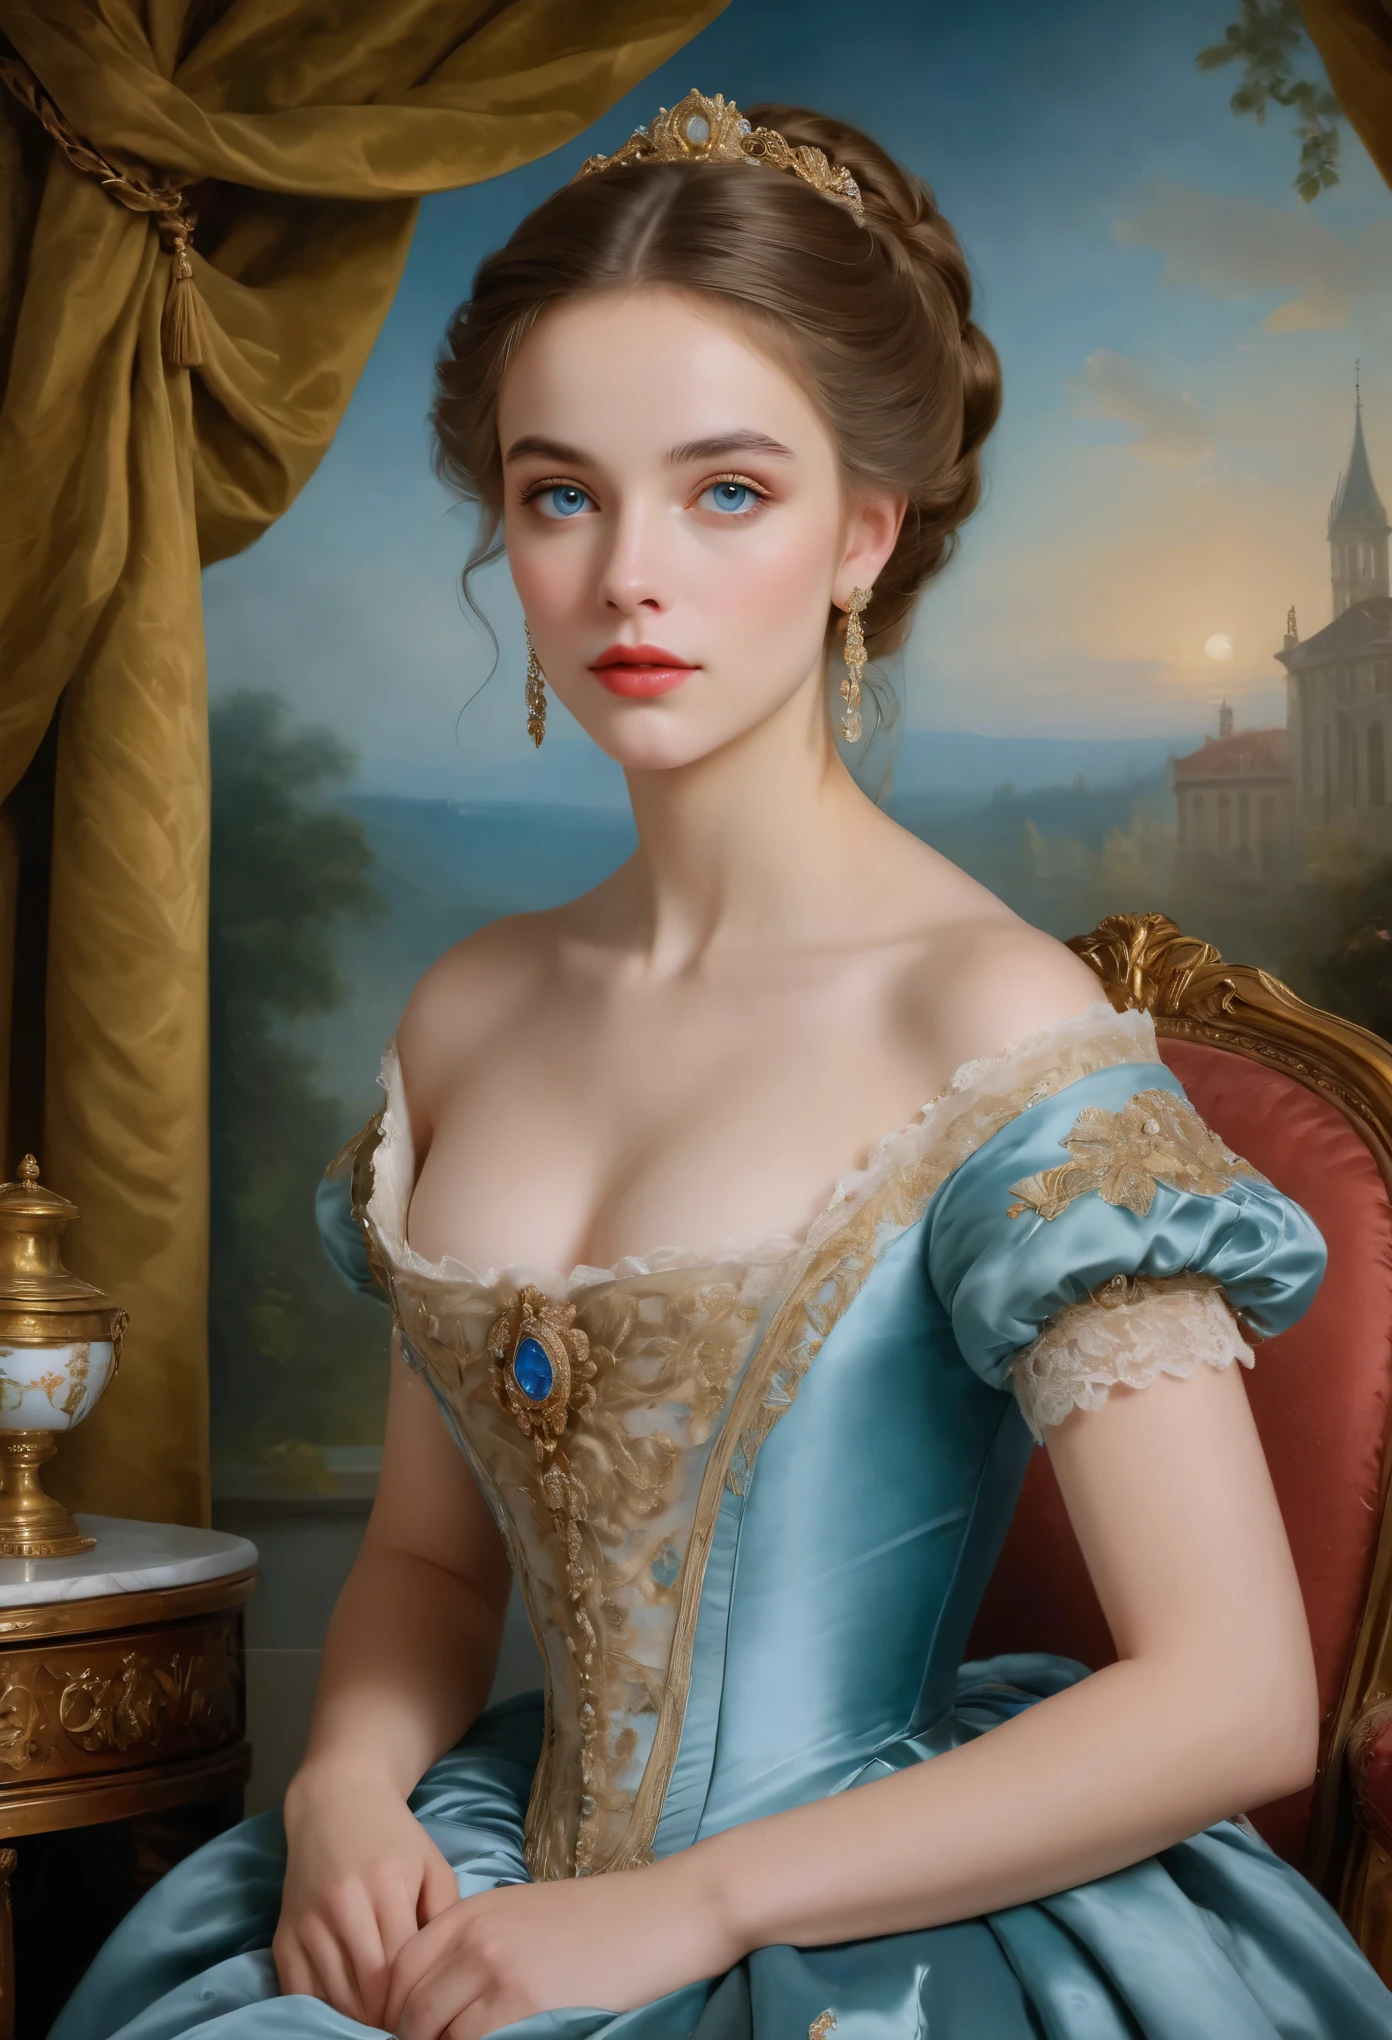 (고등어,걸작:1.2),(현실적인:1.37)비교할 수 없는 아름다움을 지닌 18세기 프랑스 귀족 소녀의 초상화. 그녀는 매혹적인 파란 눈과 섬세한 장밋빛 입술을 가지고 있습니다.. 초상화가 세밀하게 그려져 있어요, 그녀의 특징의 모든 미묘한 뉘앙스를 포착. 그녀는 아름다운 실크 가운을 입고 있습니다., 복잡한 레이스와 섬세한 자수로 장식된. 그림은 그 시대의 풍요로움을 보여줍니다, 무성한 벨벳 커튼과 금빛 가구를 배경으로. 조명은 부드럽고 확산됩니다., 소녀의 천상의 아름다움을 강조하다. 색상이 선명하고 풍부합니다., 매혹적인 시각적 경험을 창조하다. 초상화는 고전 초상화 스타일로 만들어졌습니다., 그 시대의 유명 예술가들의 작품을 연상시키는. 고급스러움이 돋보이네요, 우아함, 그리고 정교함.